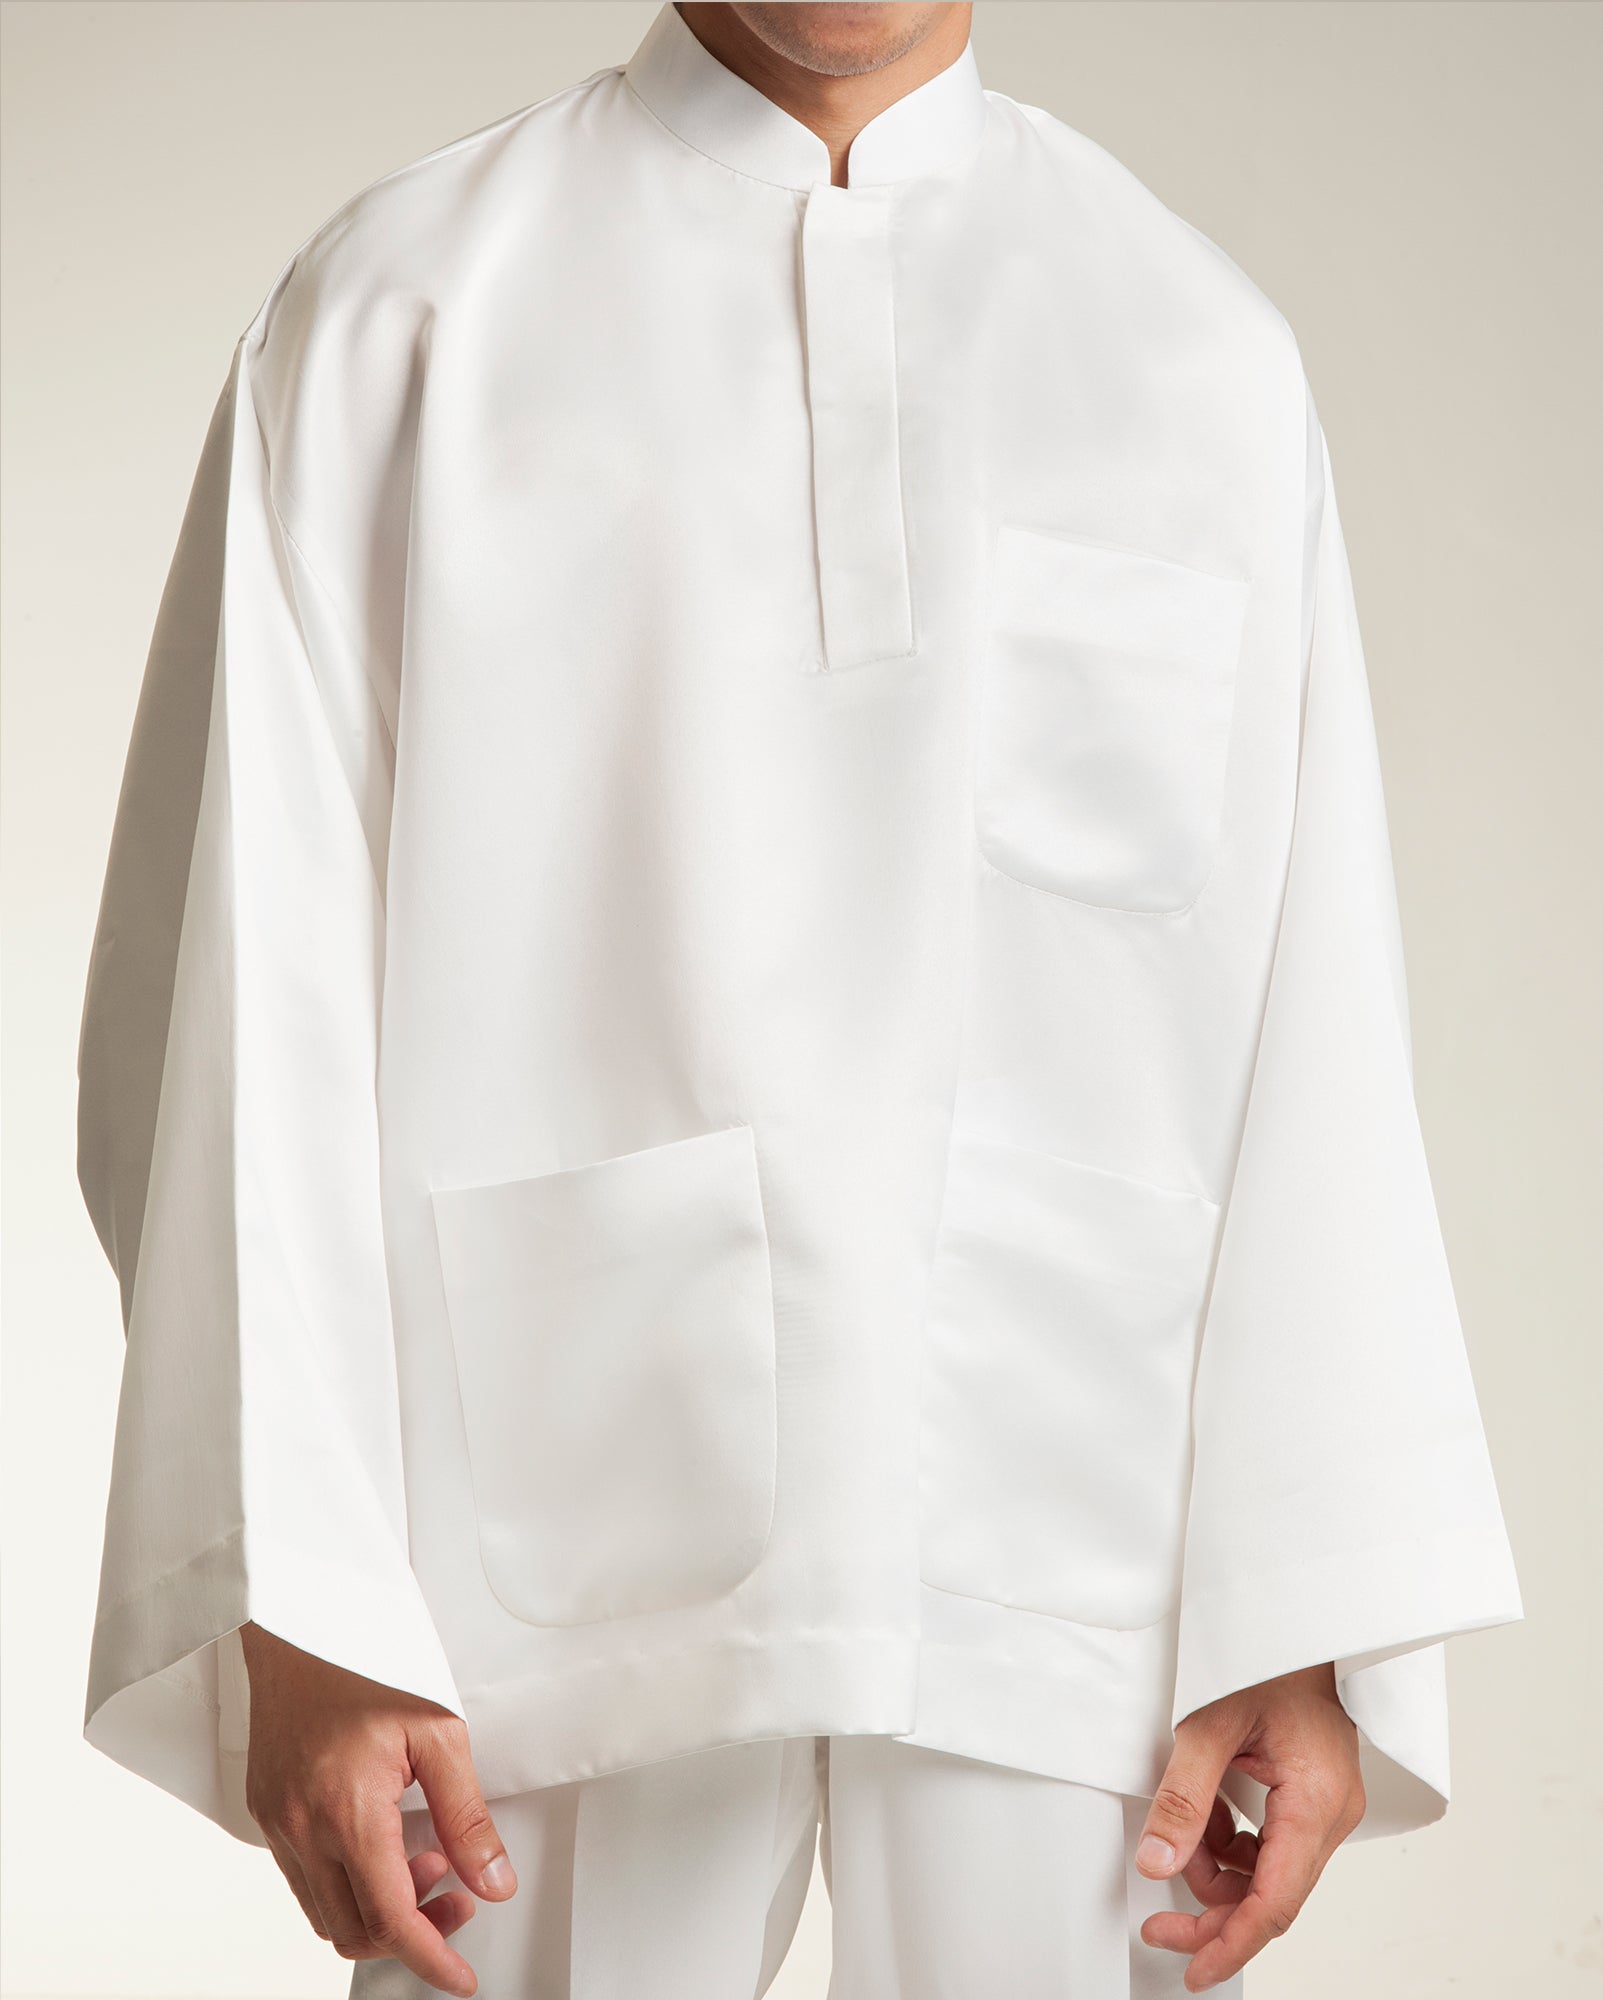 TTFGA Baju Melayu Oversaiz Set (White)